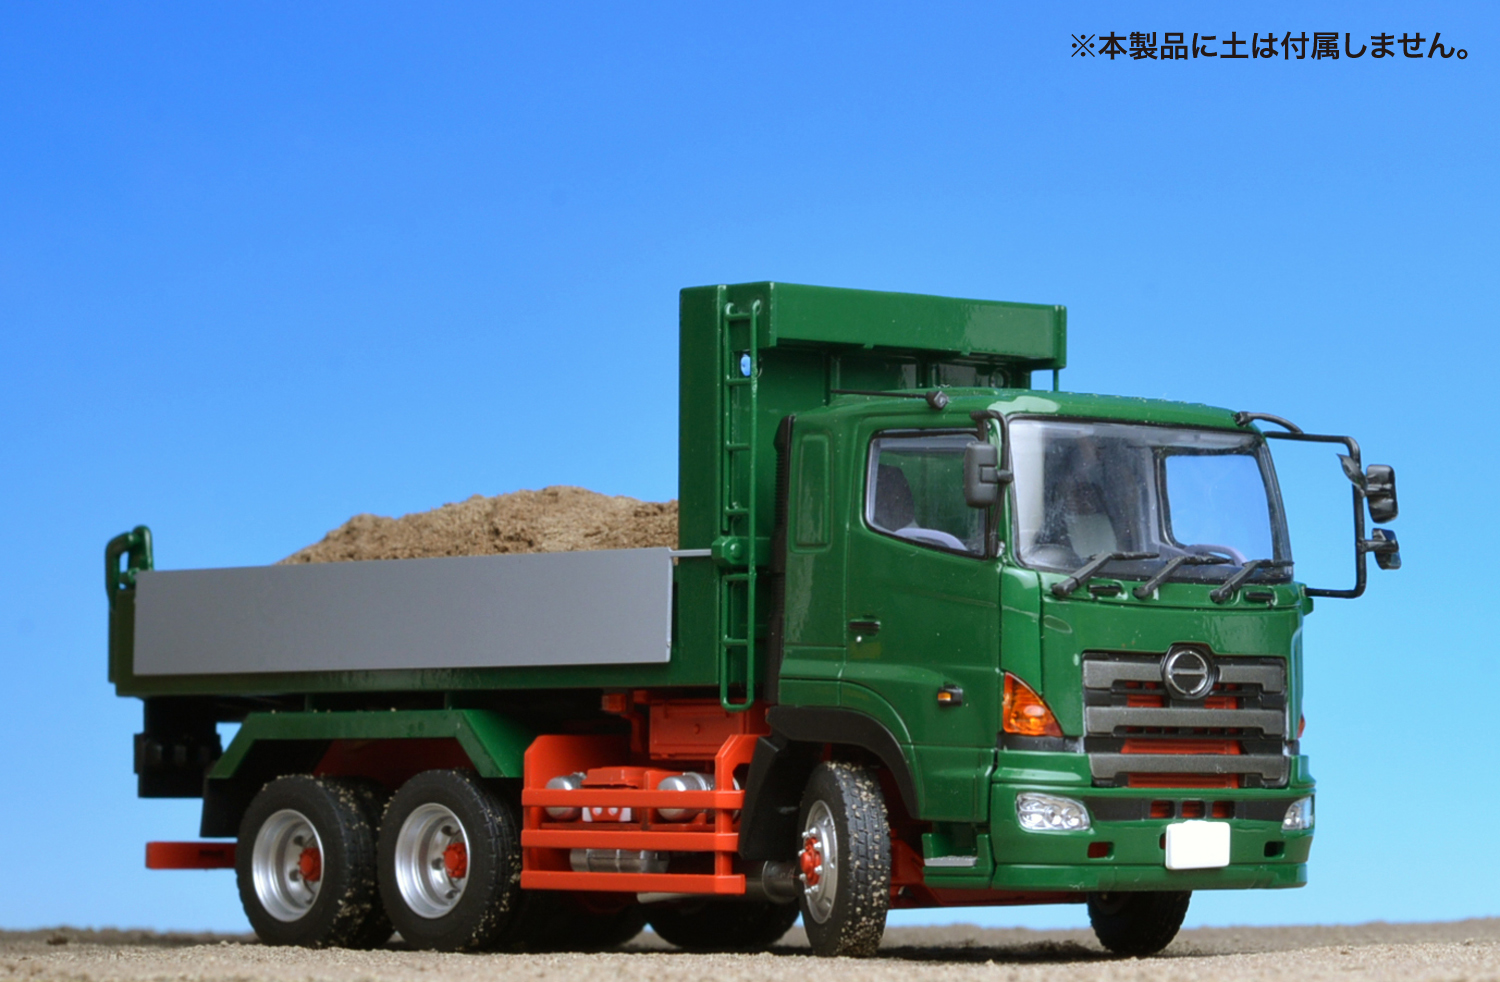 ケンクラフト 1/50 日野プロフィアFS 6×4 ダンプトラック 緑 